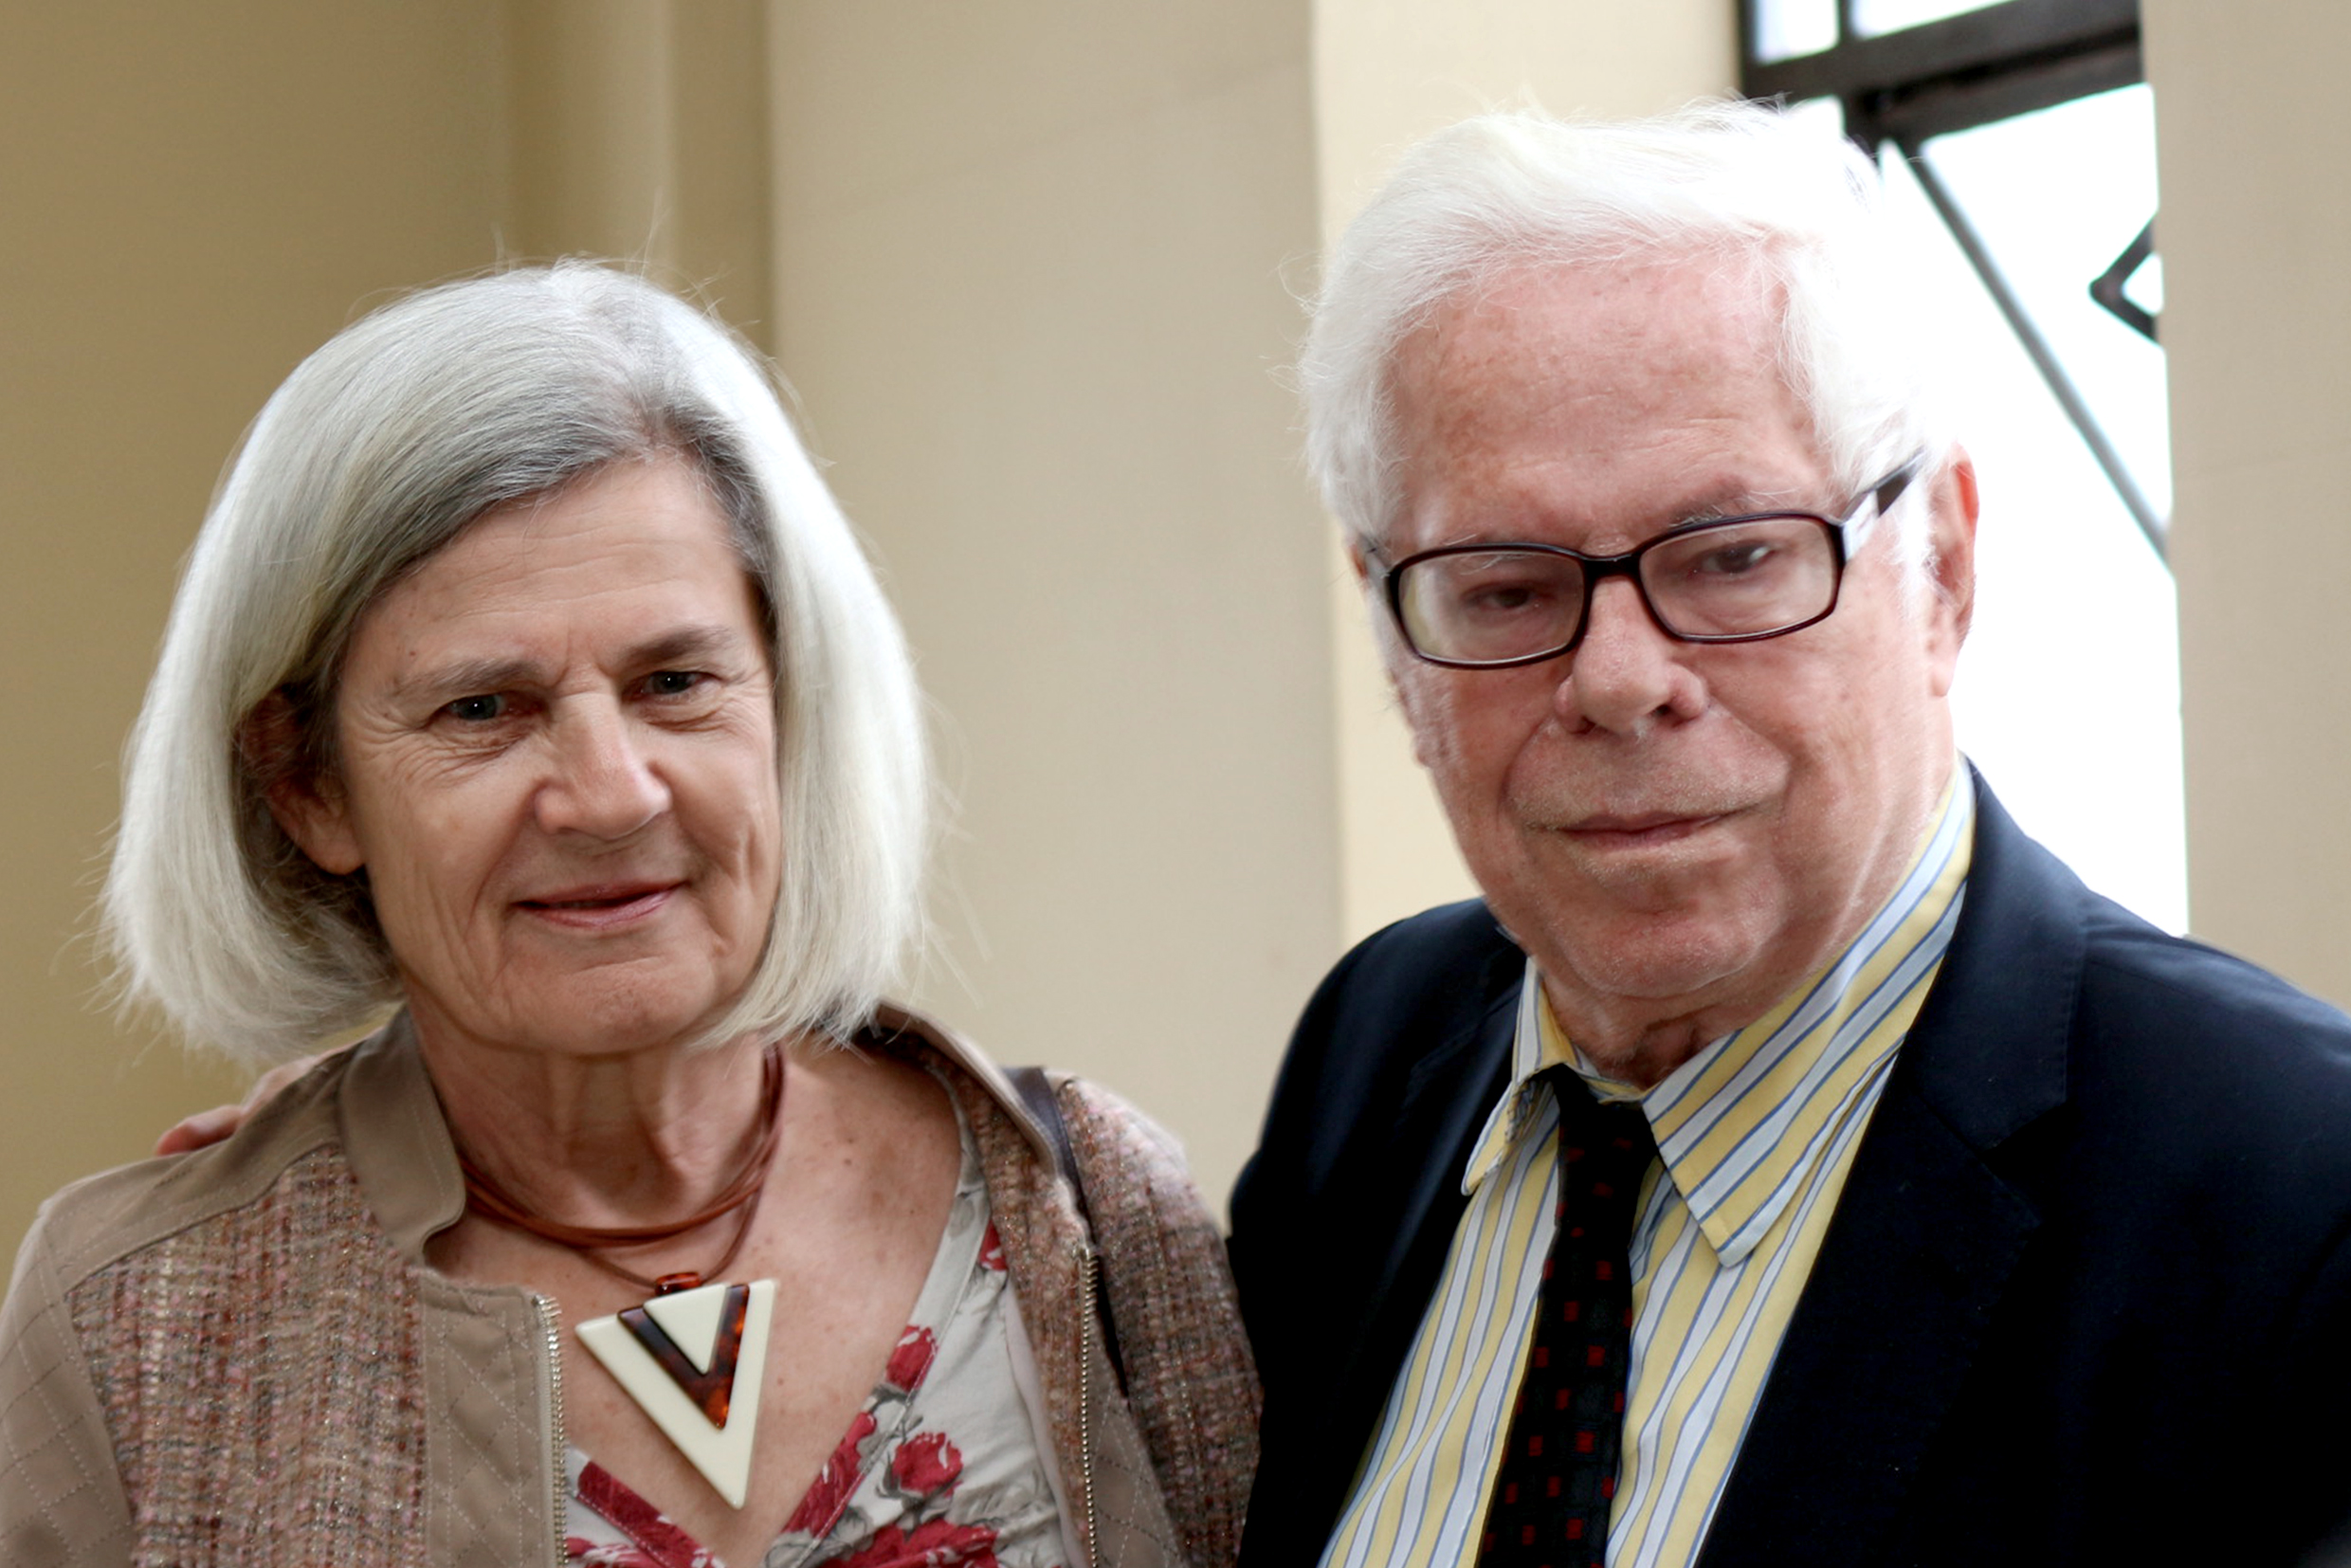 Bárbara Freitag and Sérgio Paulo Rouanet